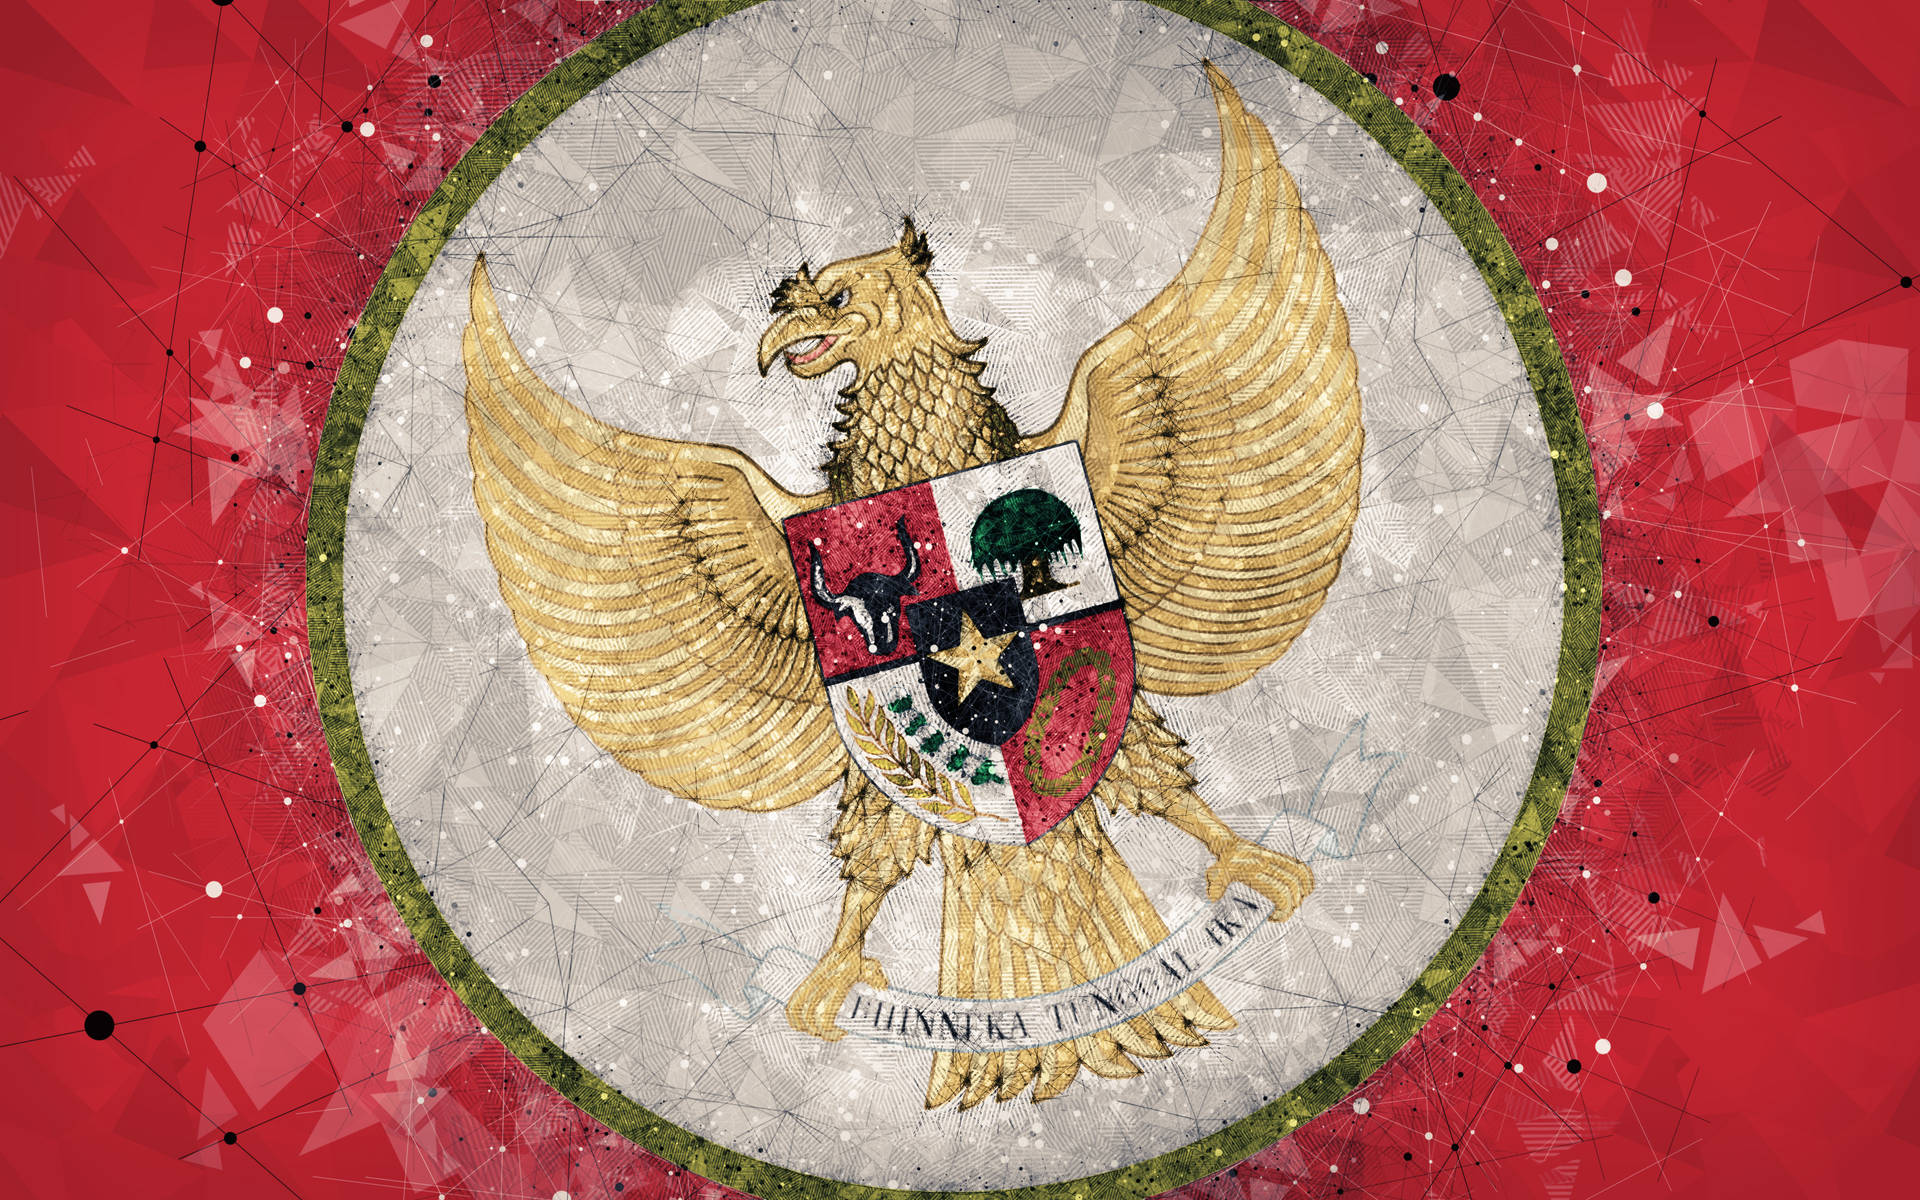 Caption: Indonesian National Emblem - Garuda Pancasila